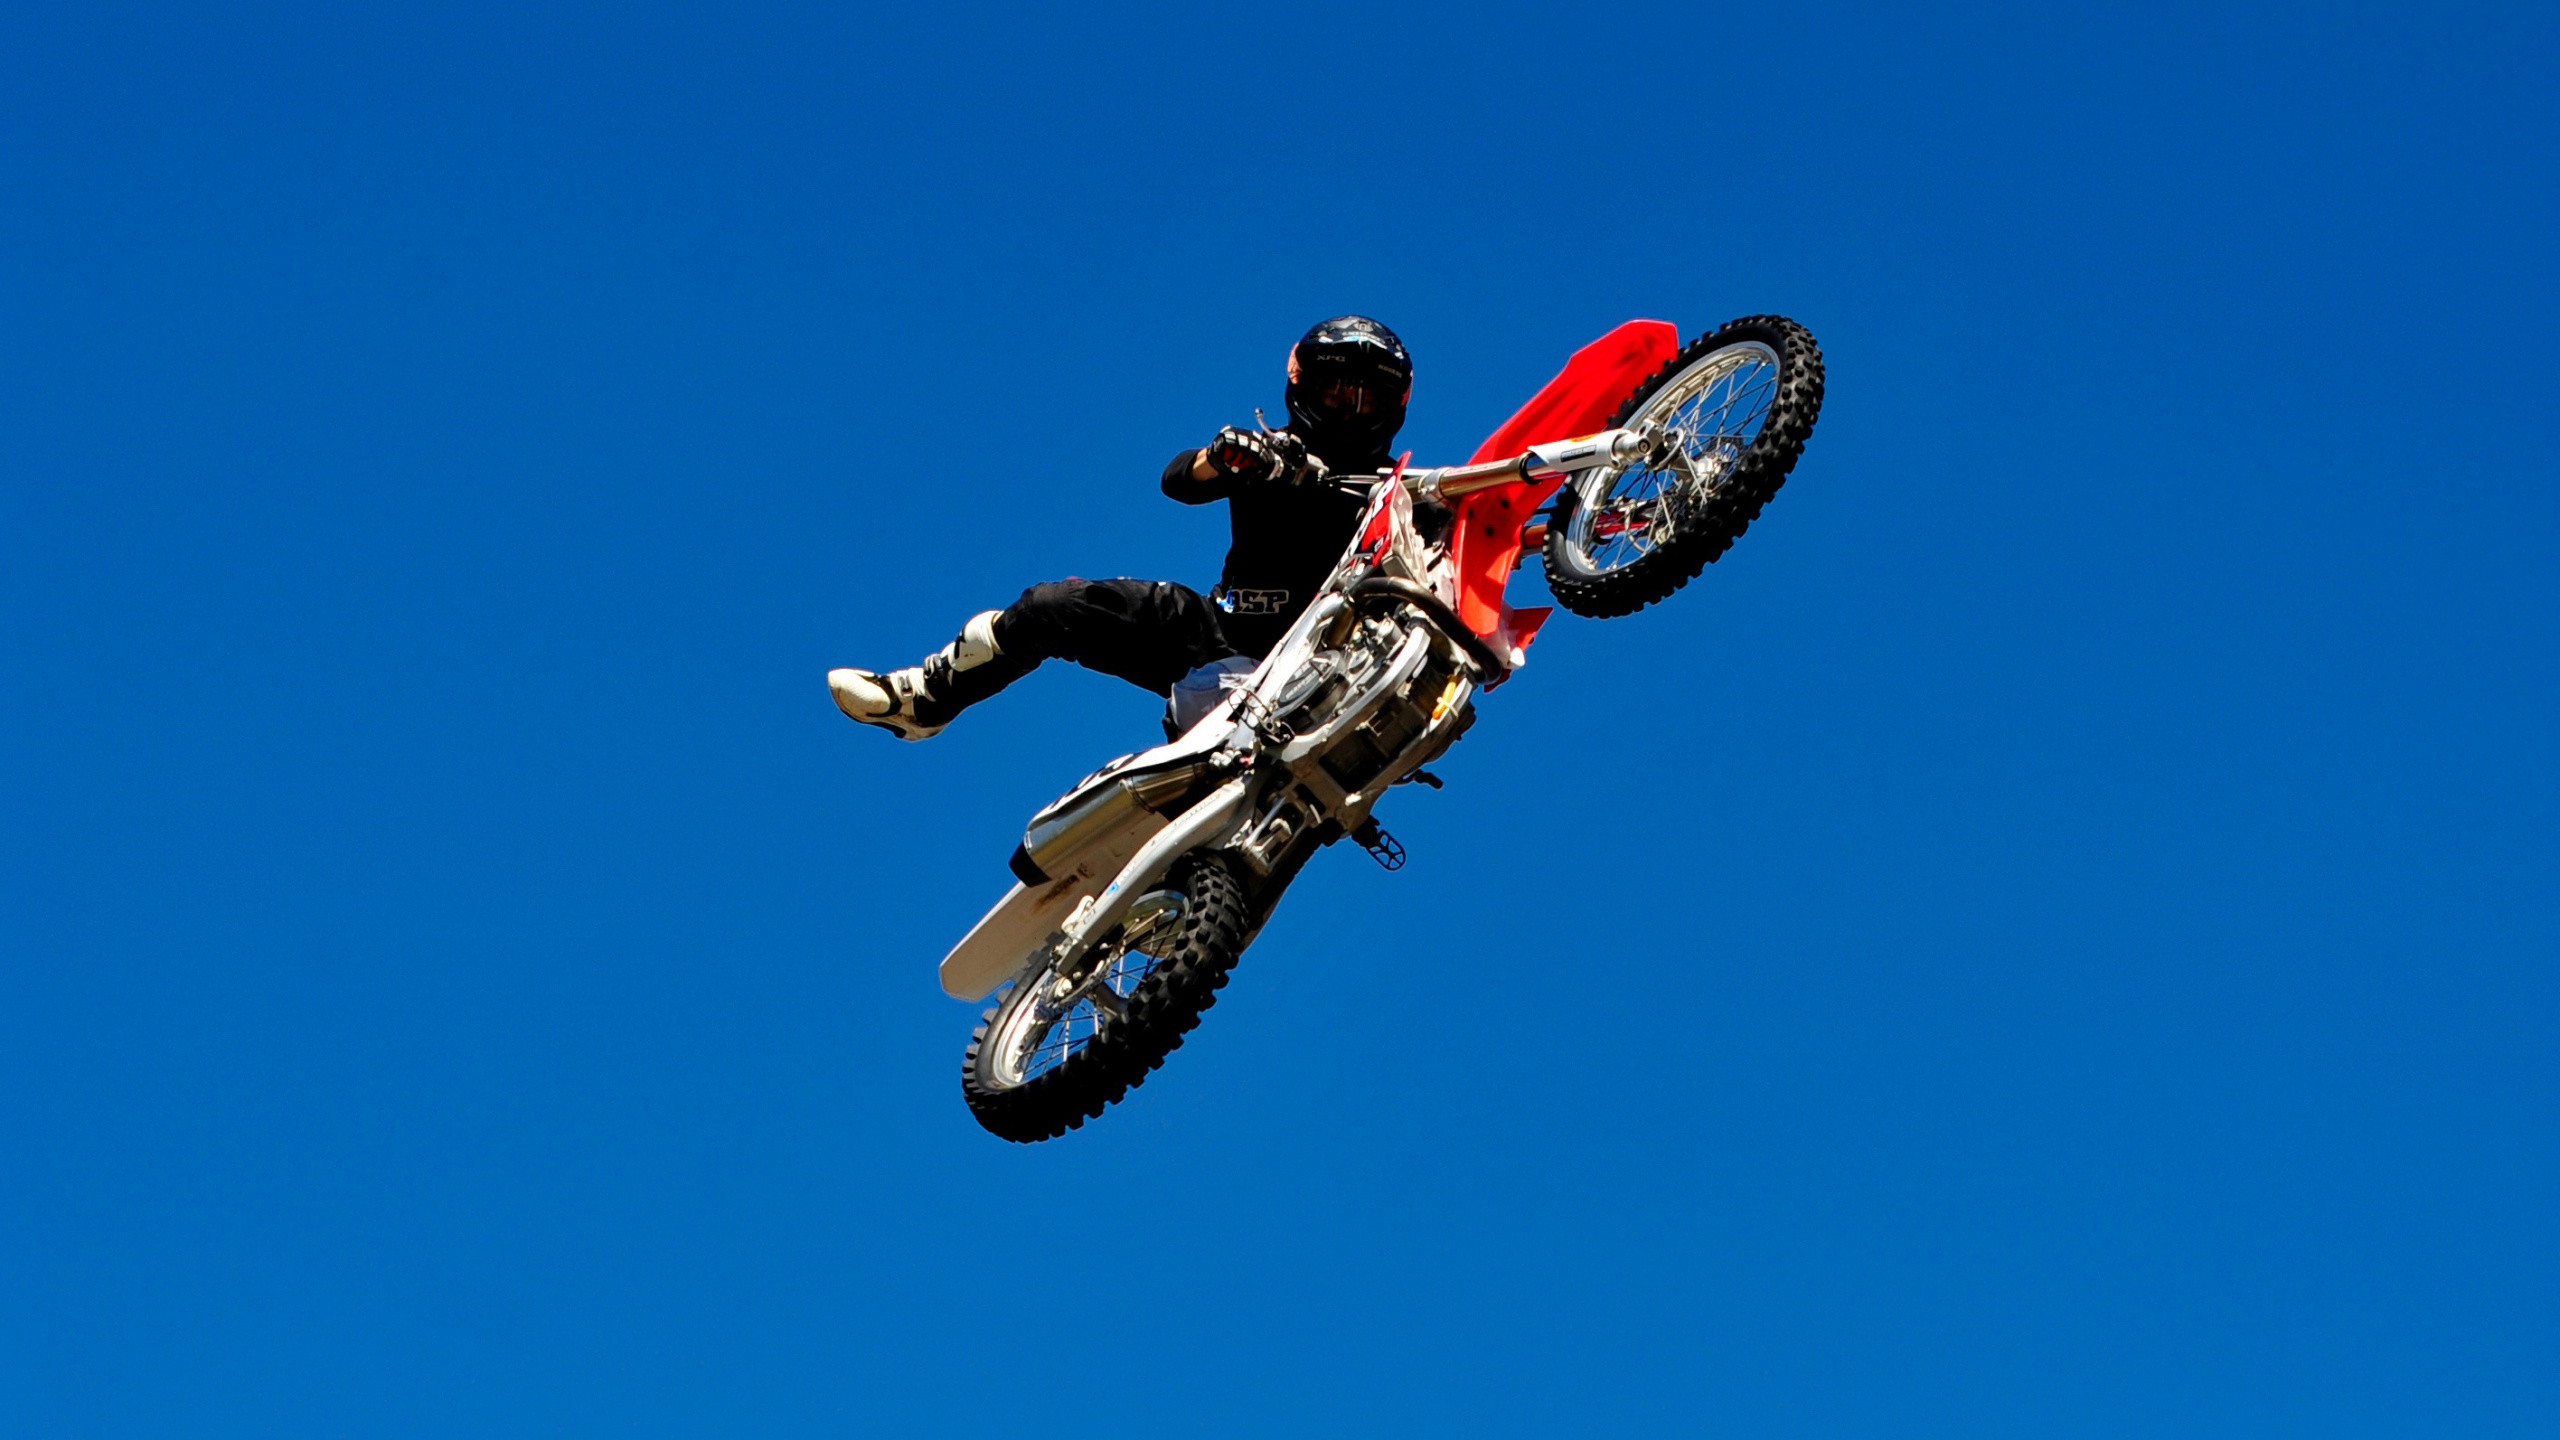 Mann im Roten Und Schwarzen Motocross-Anzug, Der Ein Rotes Und Weißes Motocross-Dirt-Bike Fährt Riding. Wallpaper in 2560x1440 Resolution